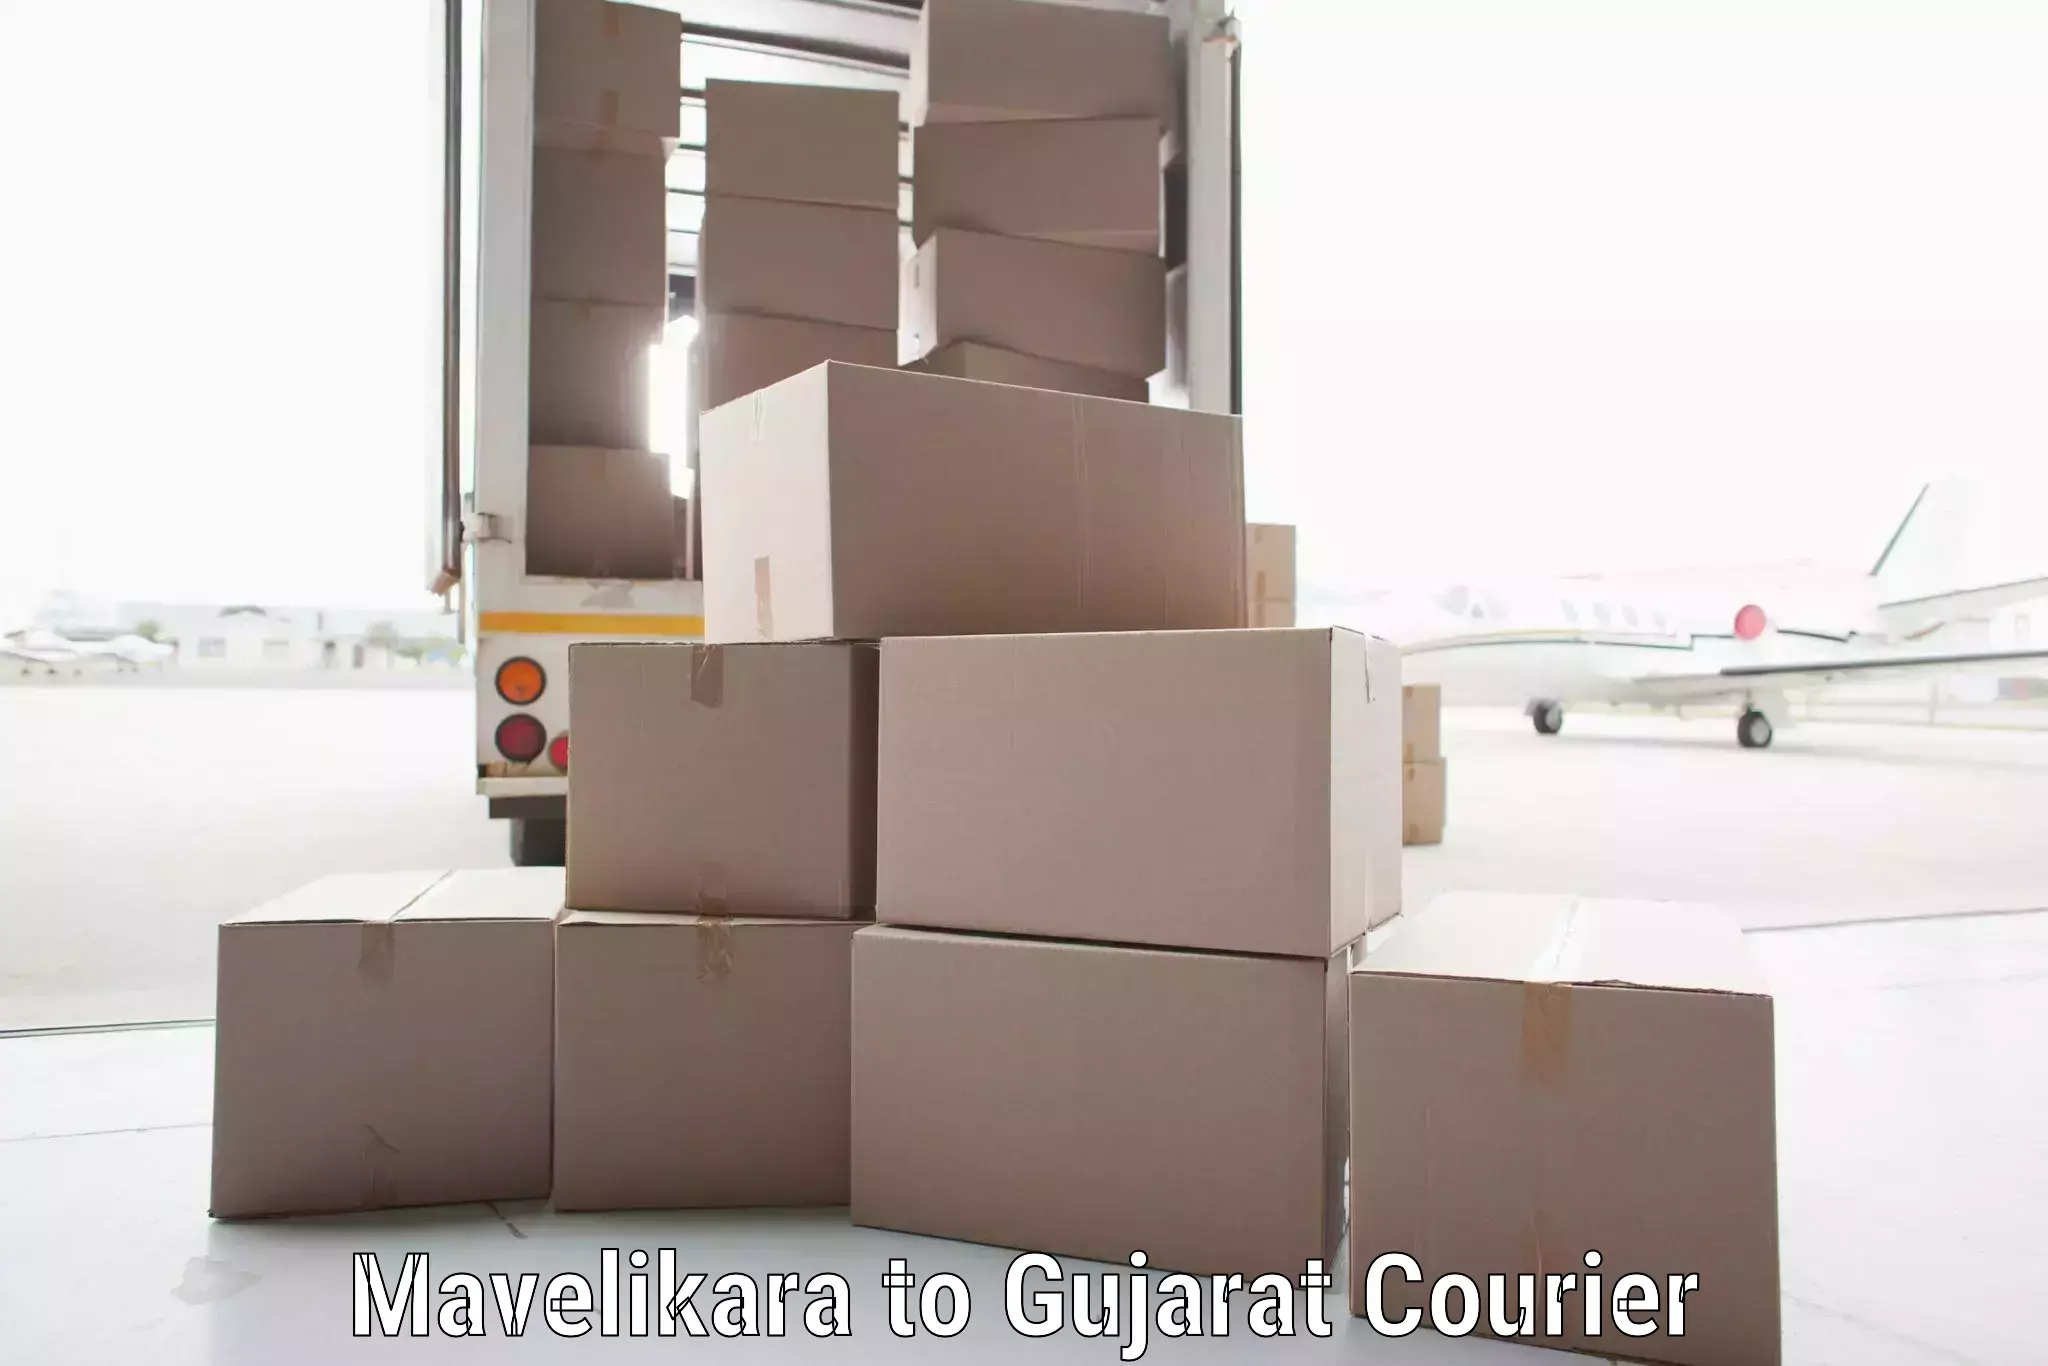 Urgent courier needs Mavelikara to Vijapur